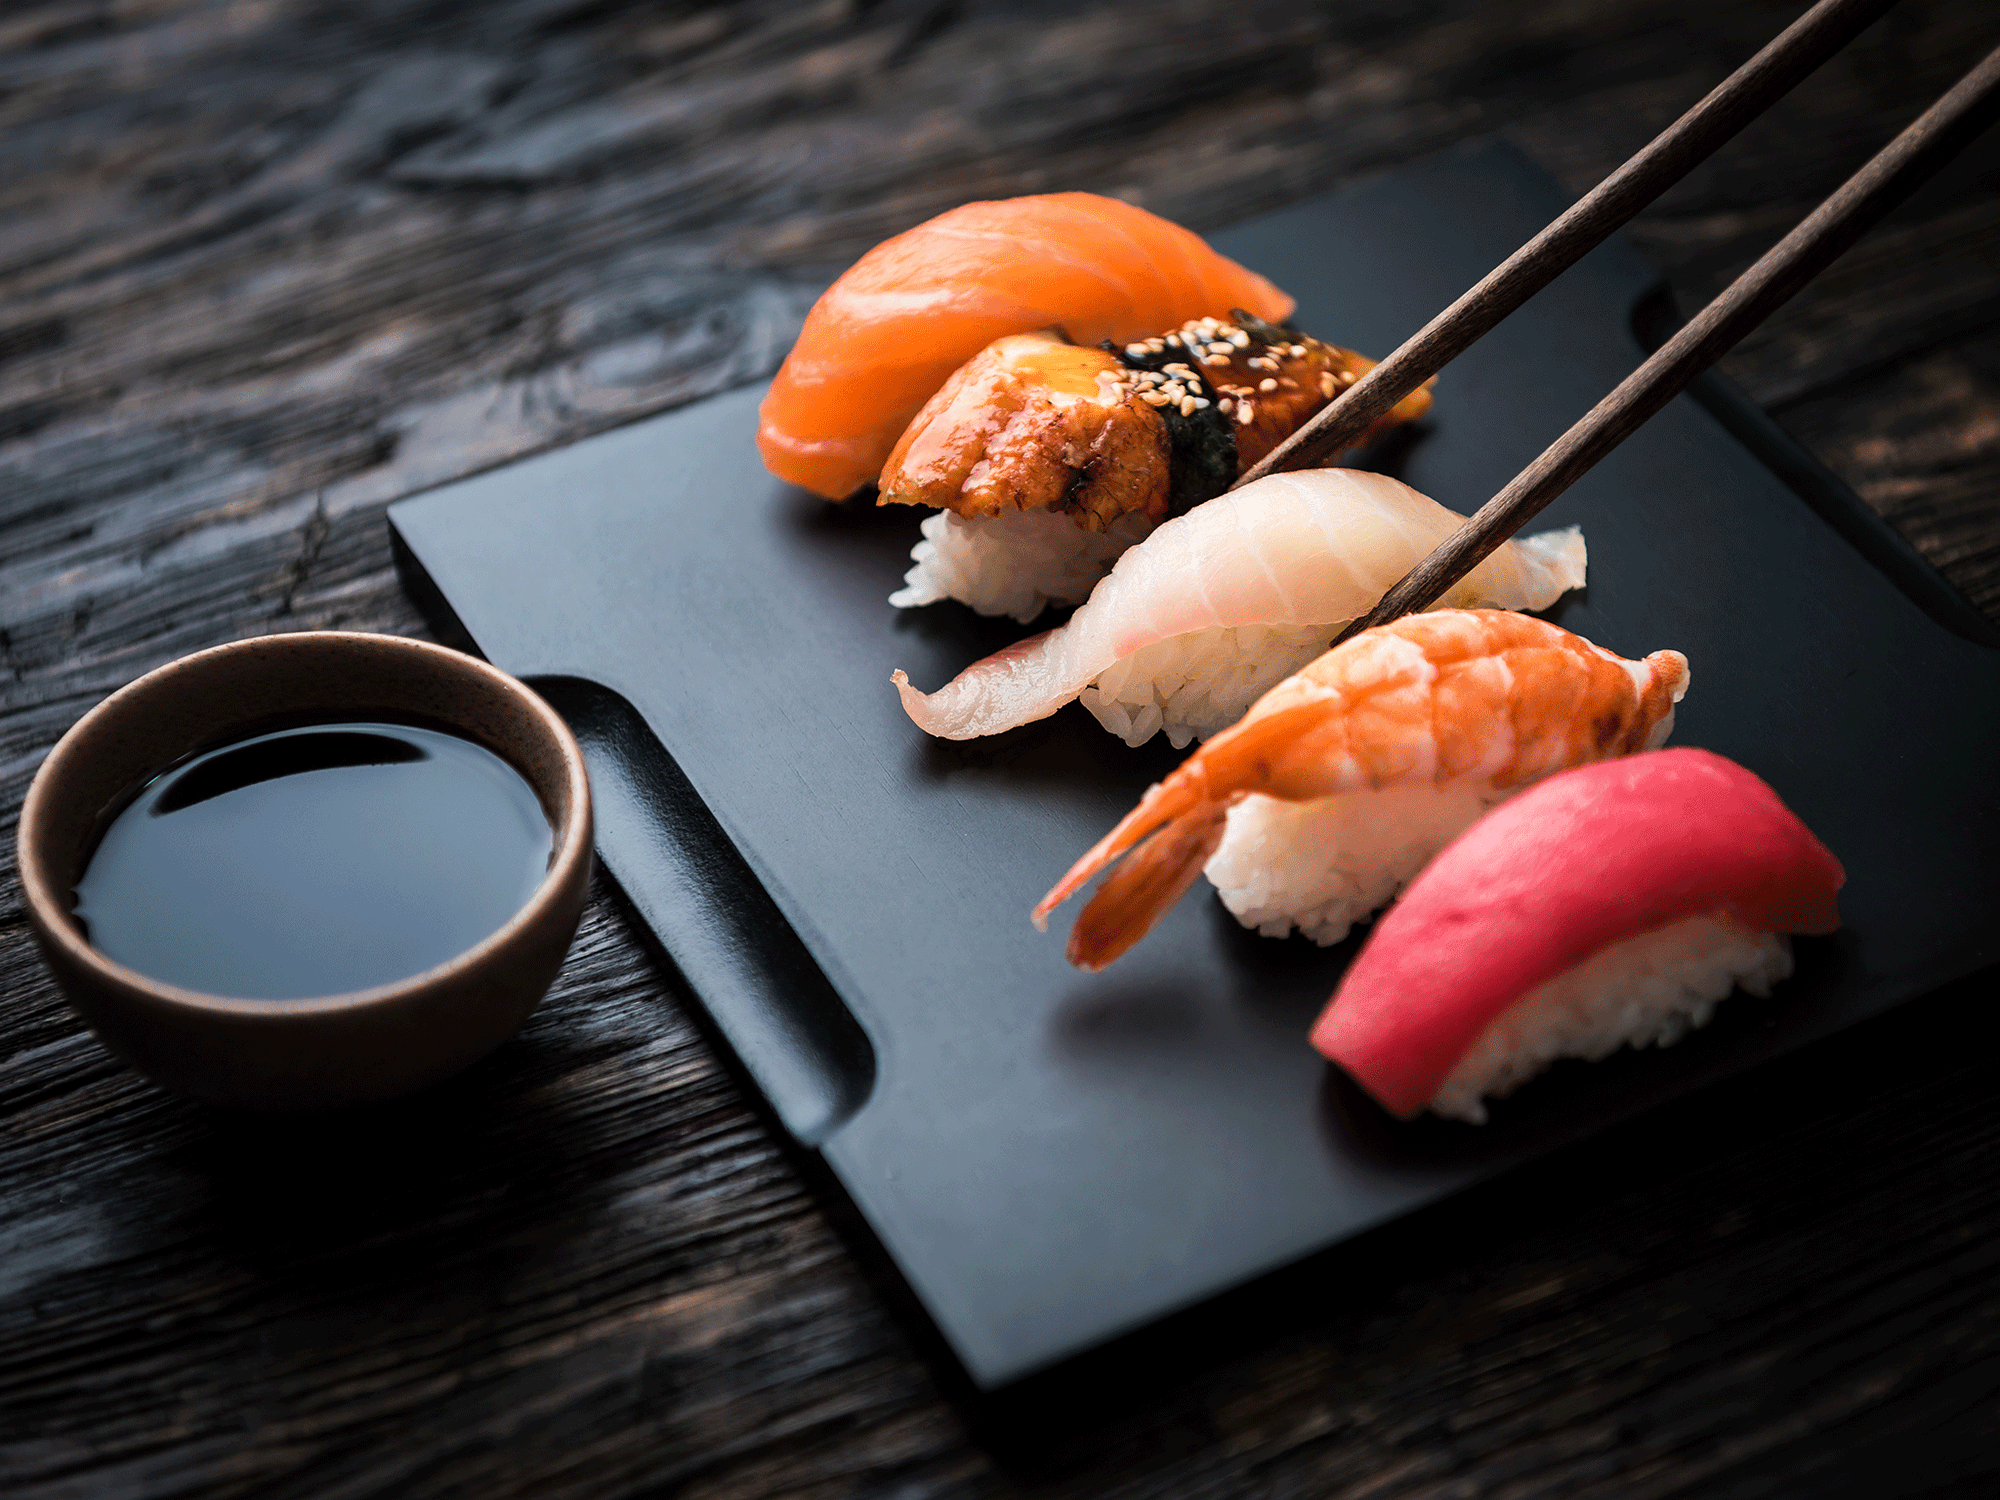 Tại sao người Nhật ăn cá sống mỗi ngày mà không sợ bị nhiễm ký sinh trùng? - Ảnh 1.